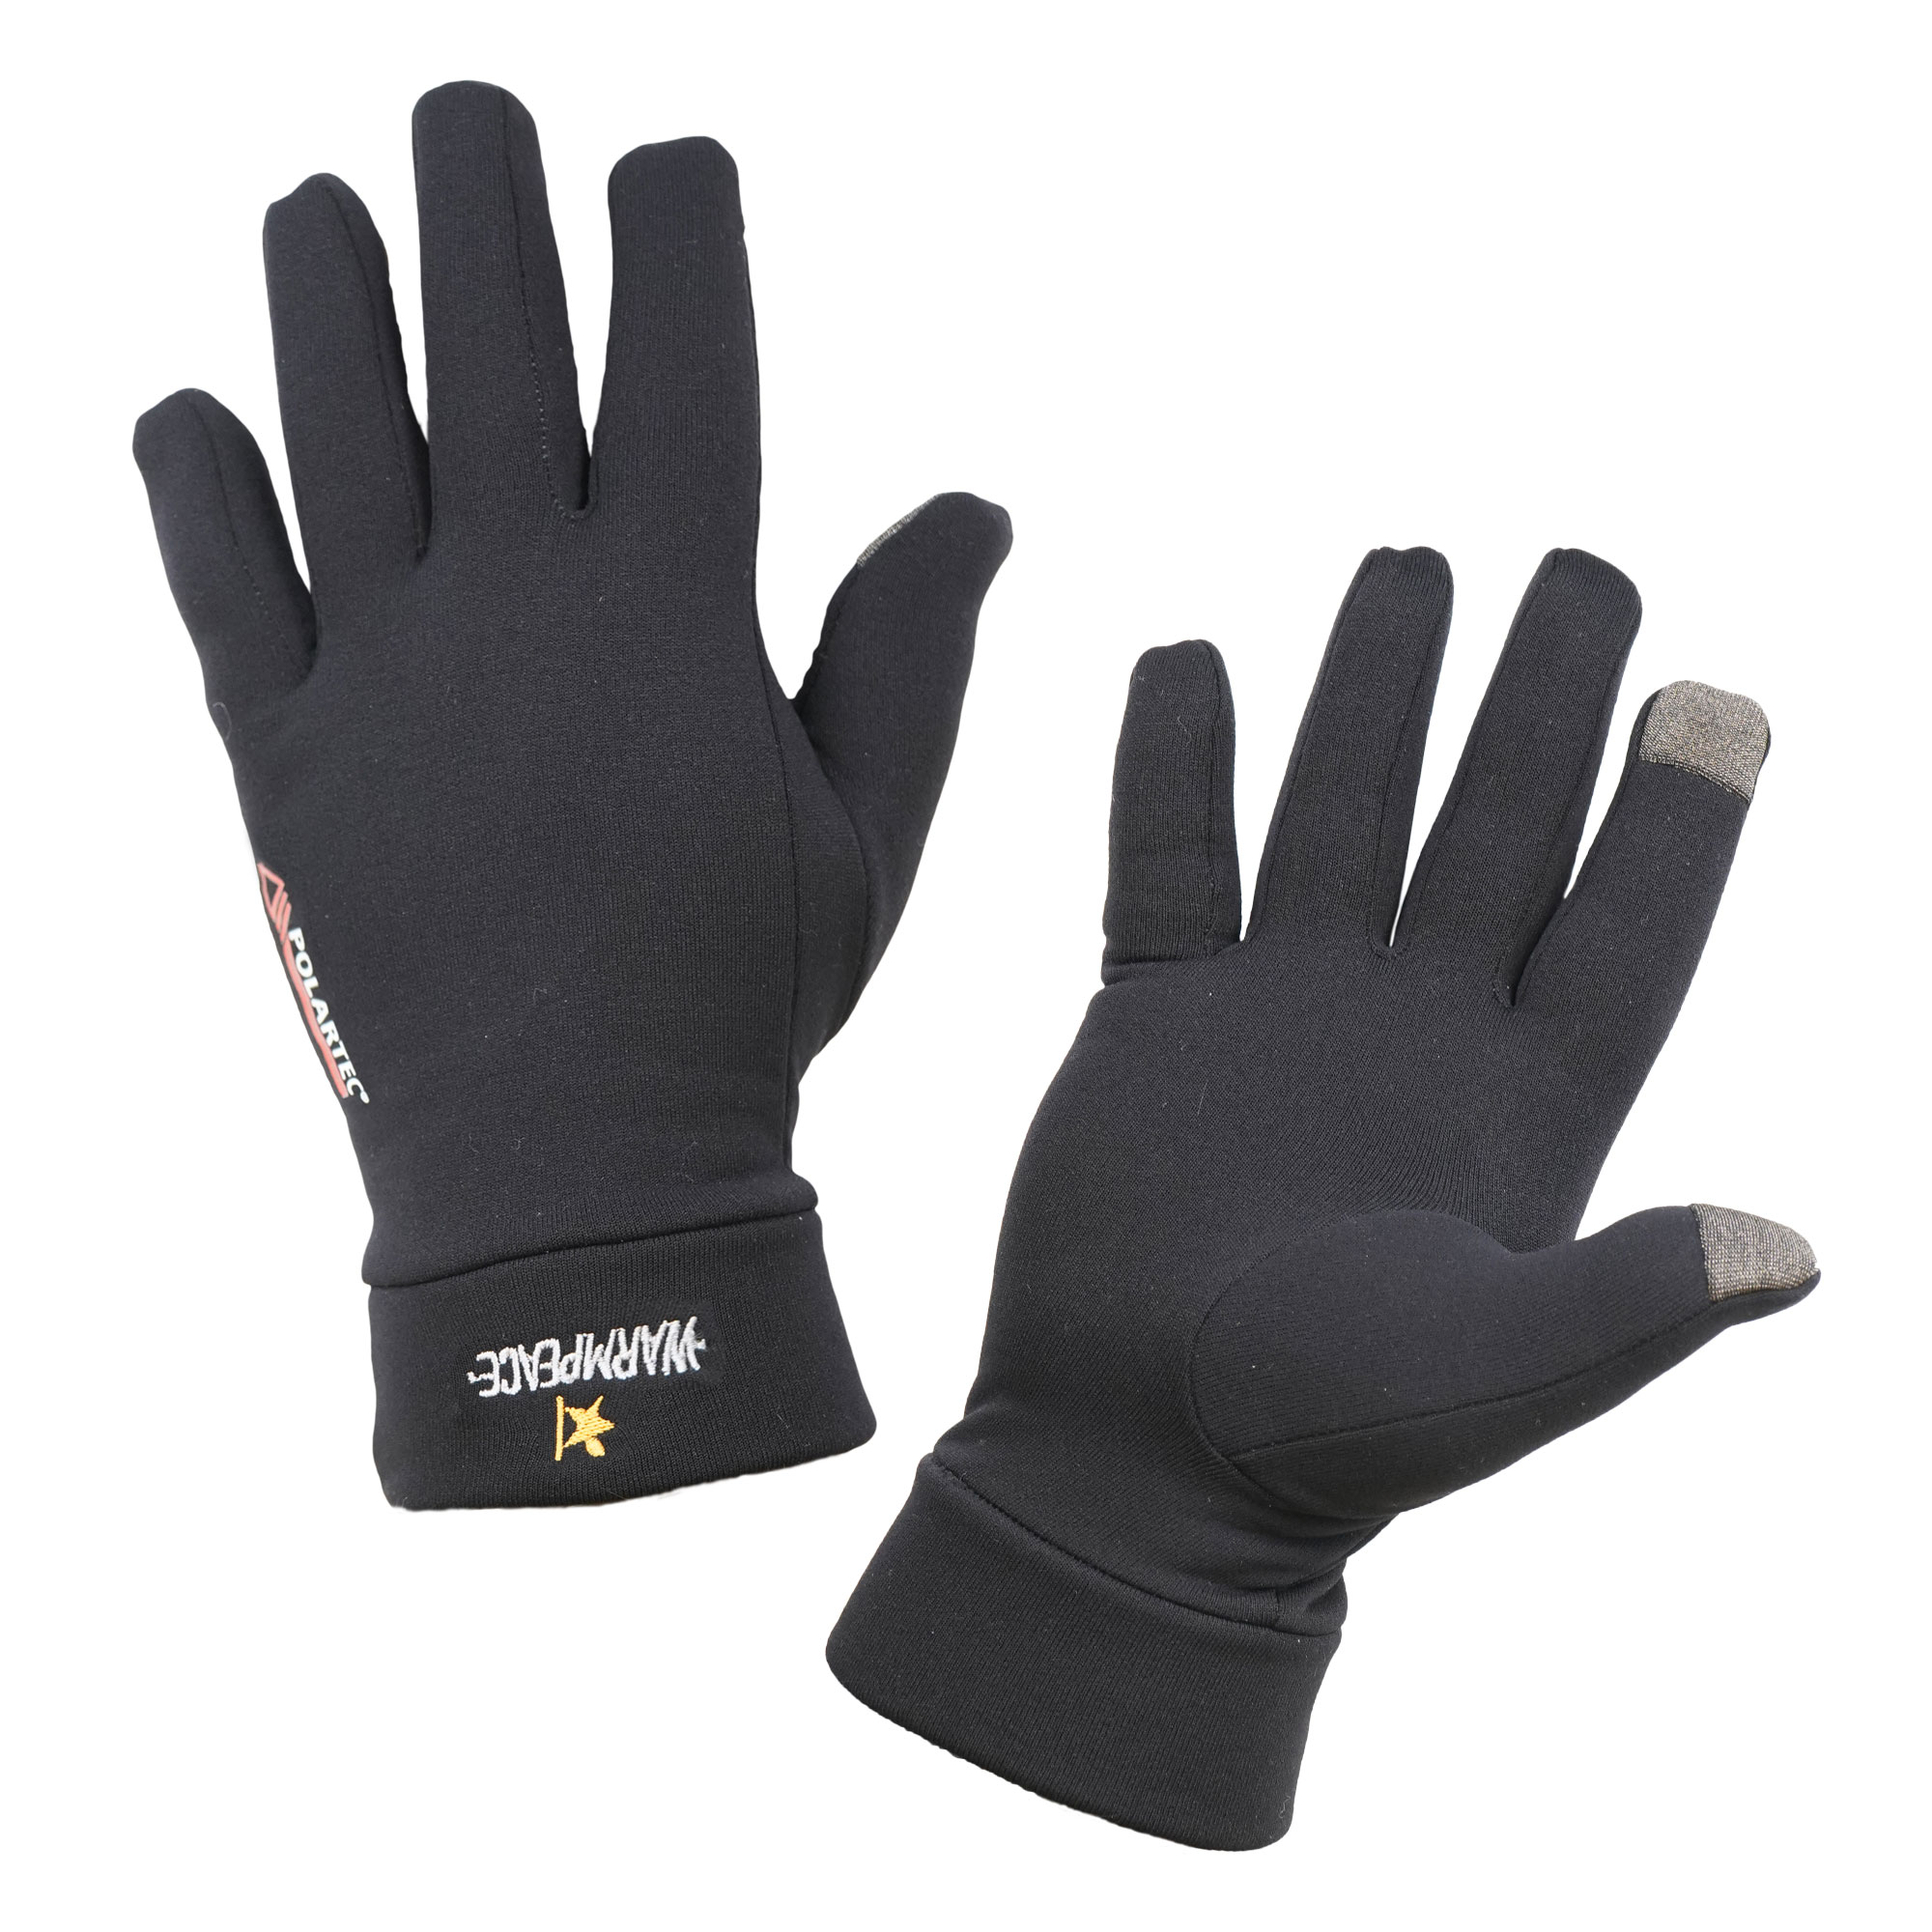 Warmpeace Powerstretch Touchscreen Handschuhe